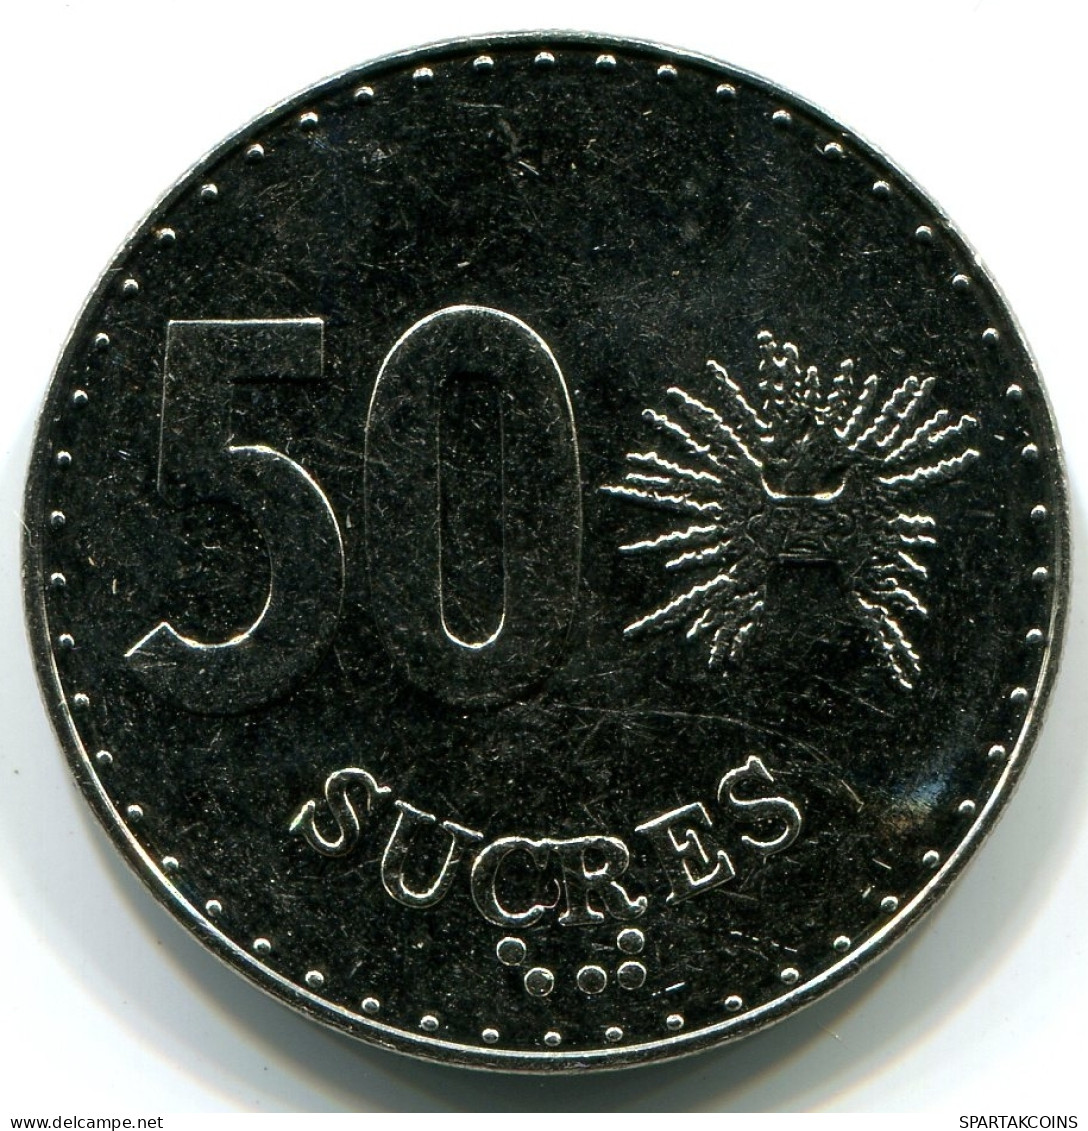 50 SUCRE 1991 ECUADOR UNC Münze #W10992.D - Ecuador